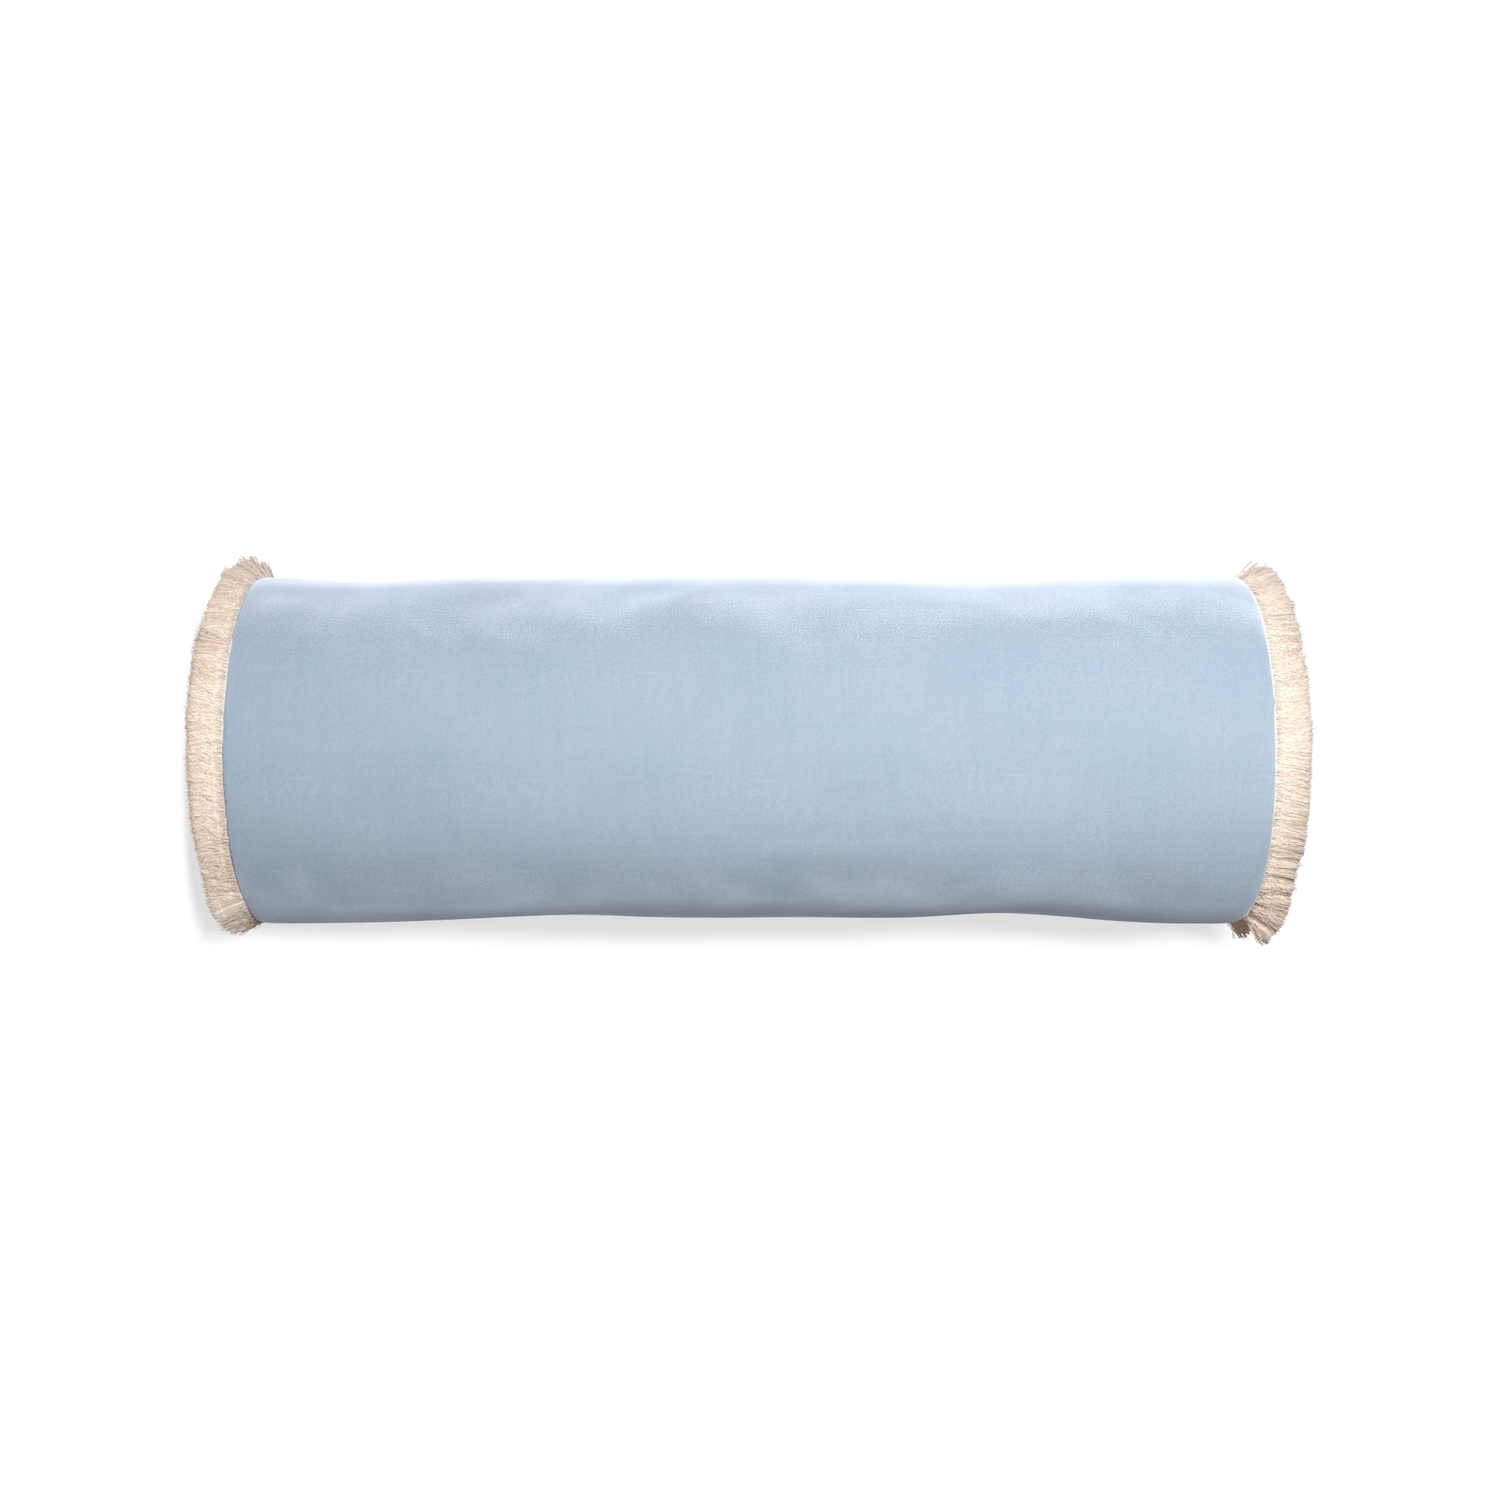 bolster light blue velvet pillow with cream fringe